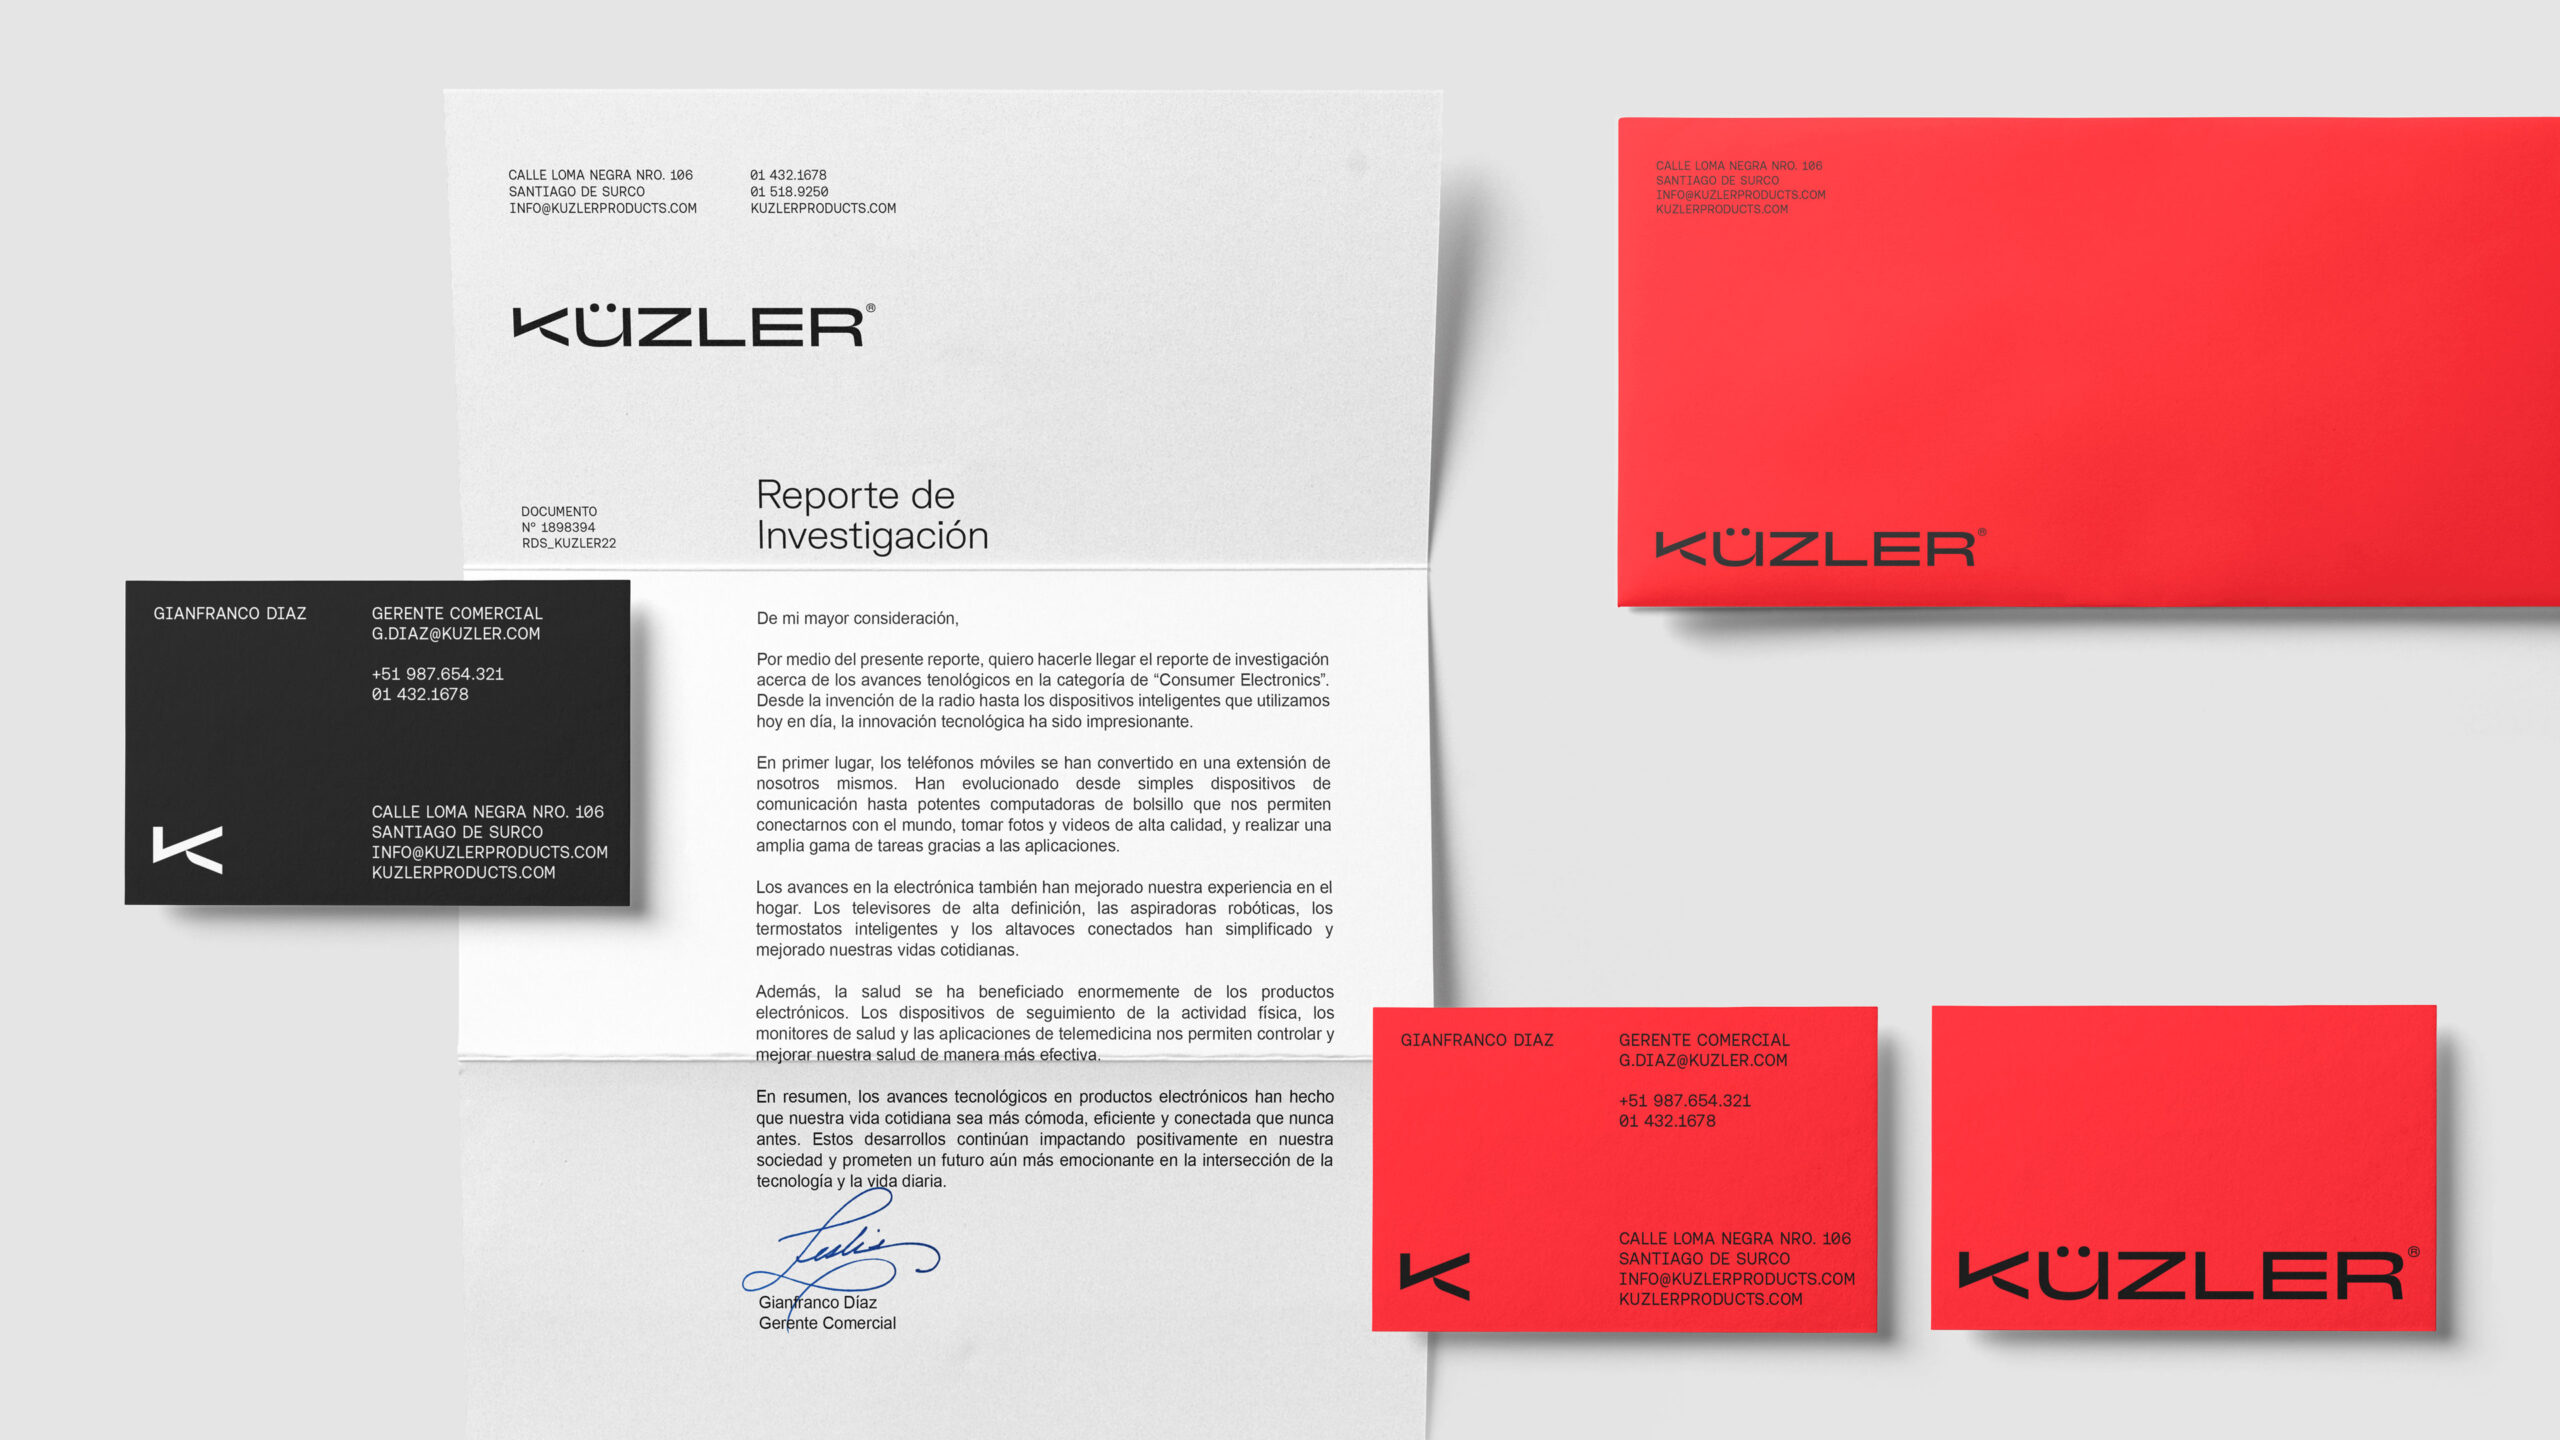 KÜZLER数码产品视觉形象设计